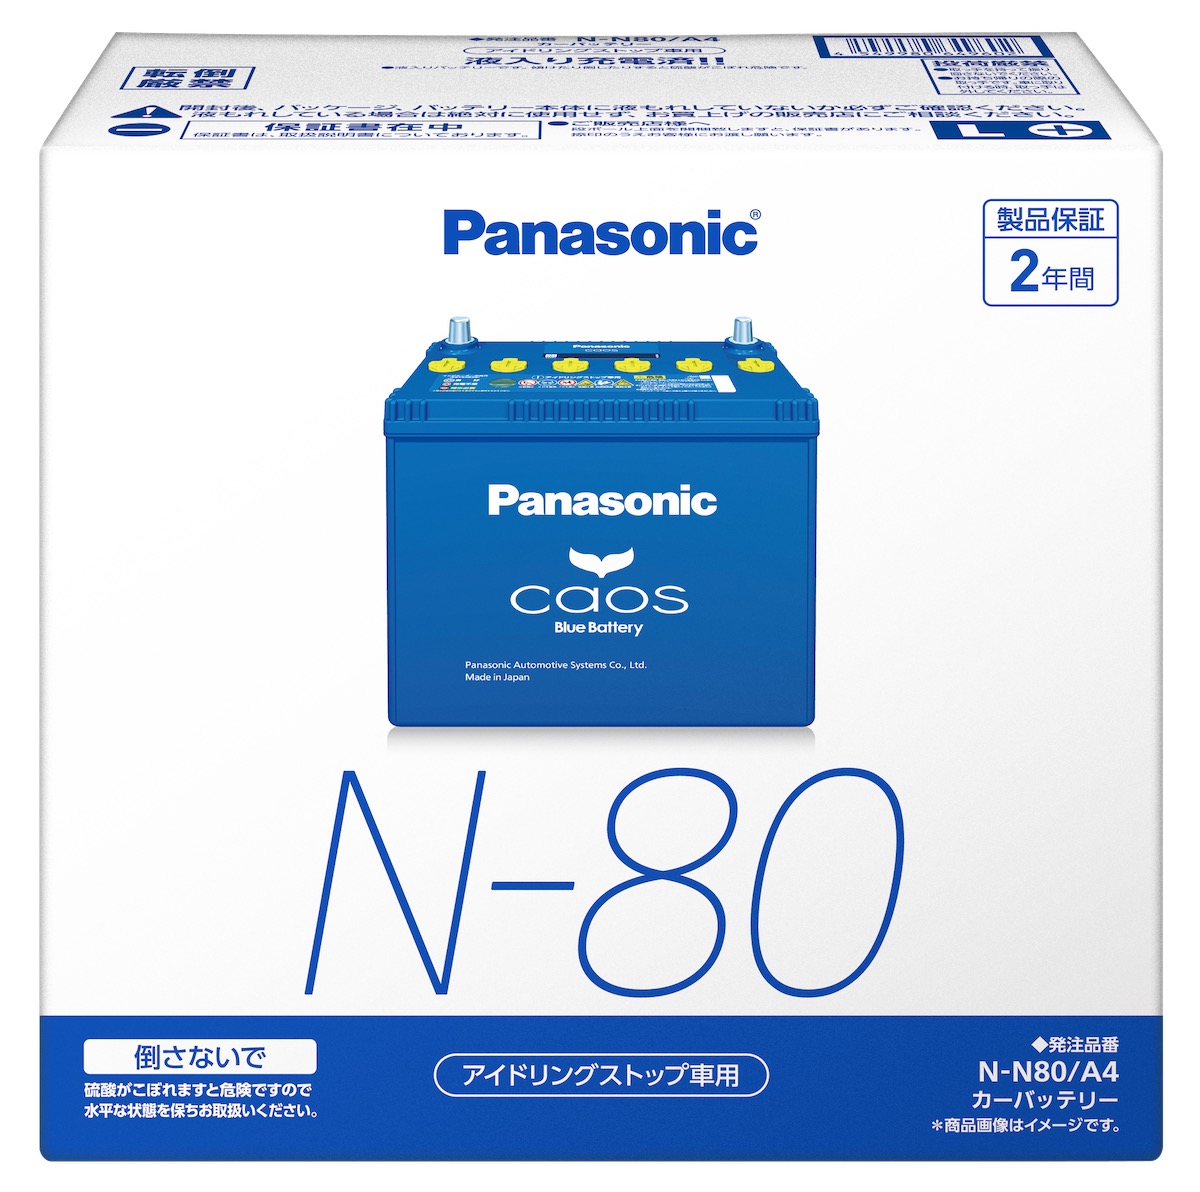 パナソニック カオス N-N80/A4